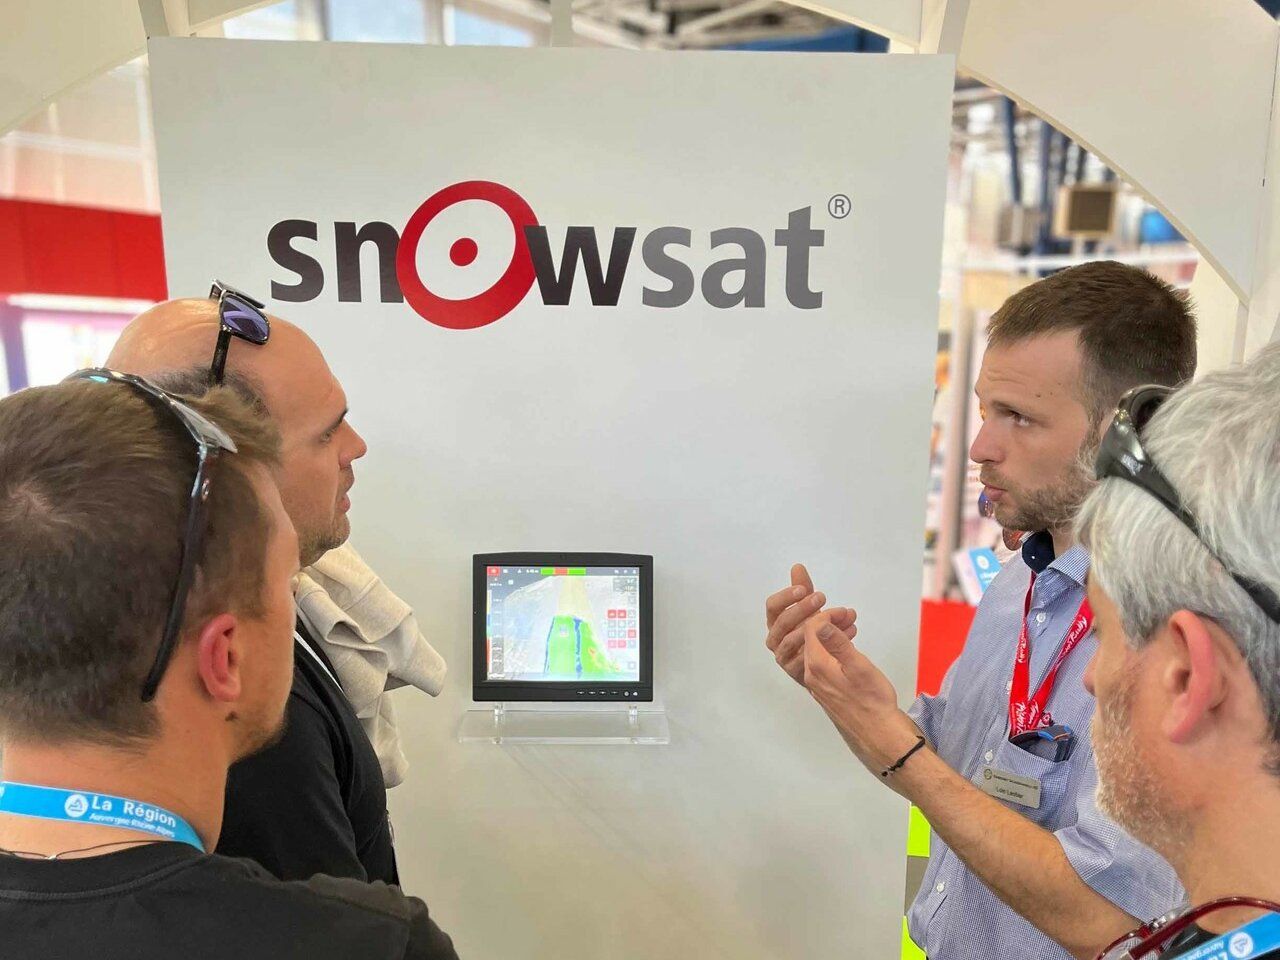 SNOWsat Teammitglied präsentiert die Software